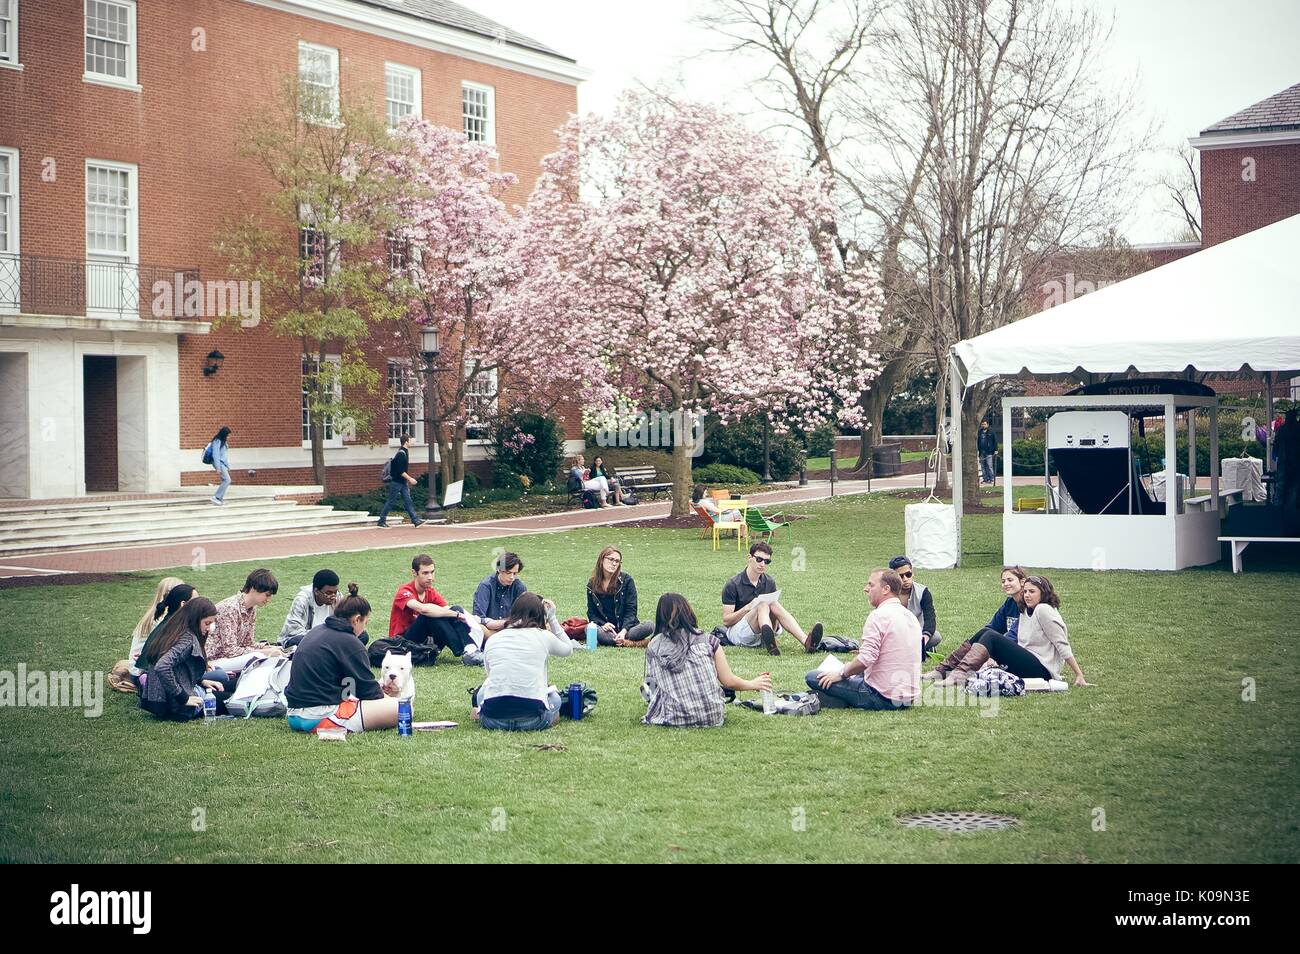 Studenten in einem Kreis auf Johns Hopkins University Wyman Quad, einem sozialen Sammelbereich für Studenten vor Shriver Hall, 2015 sitzen. Mit freundlicher Genehmigung von Eric Chen. Stockfoto